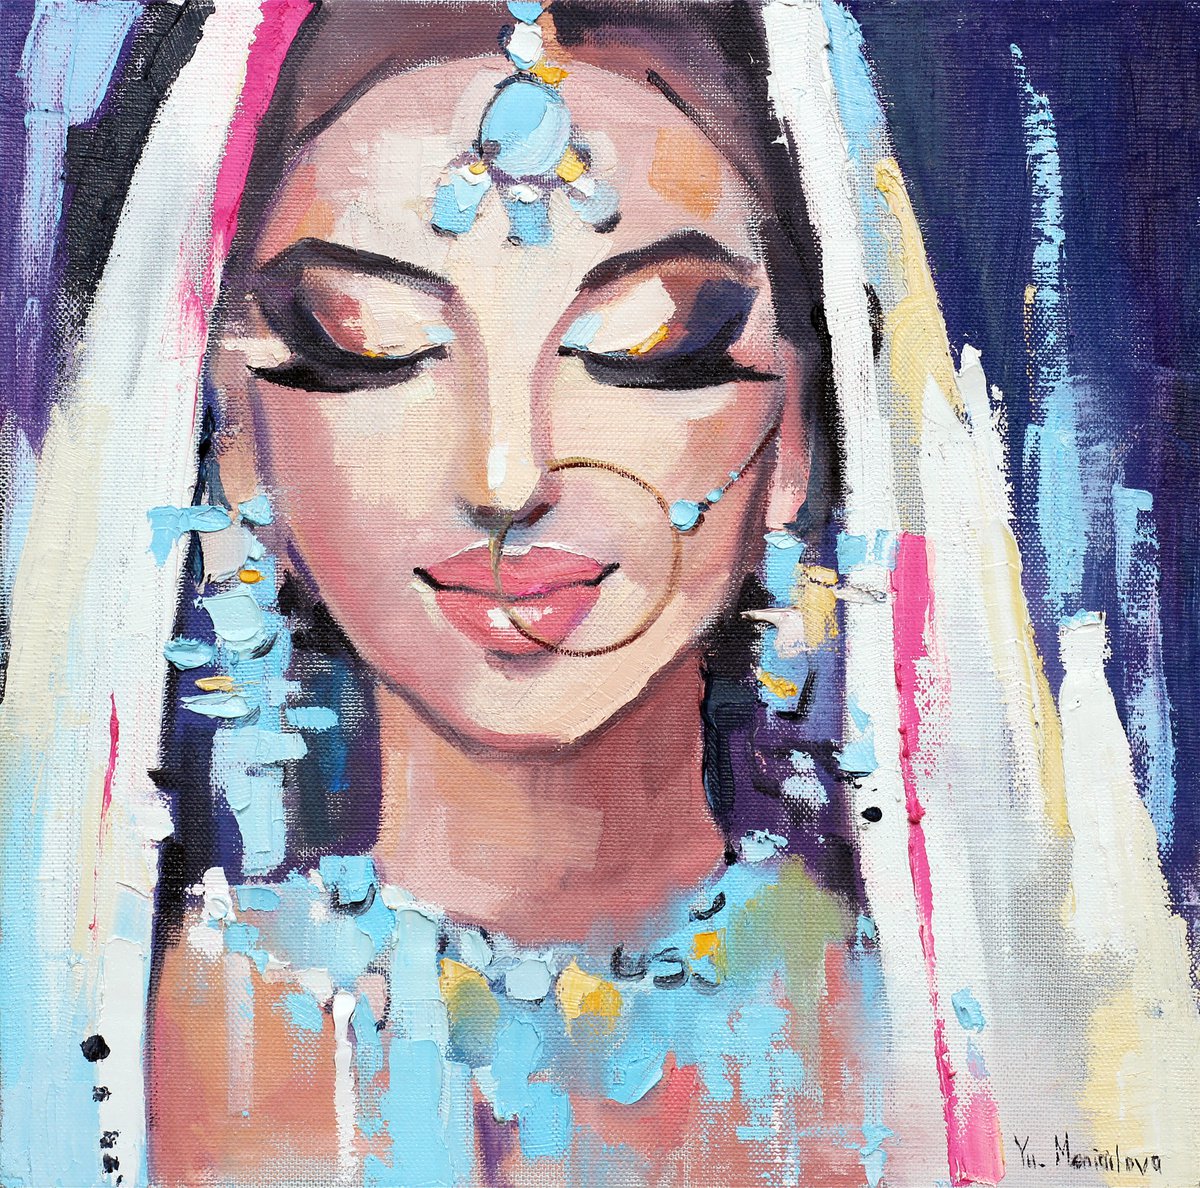 Indian woman #2 by Yuliia Meniailova